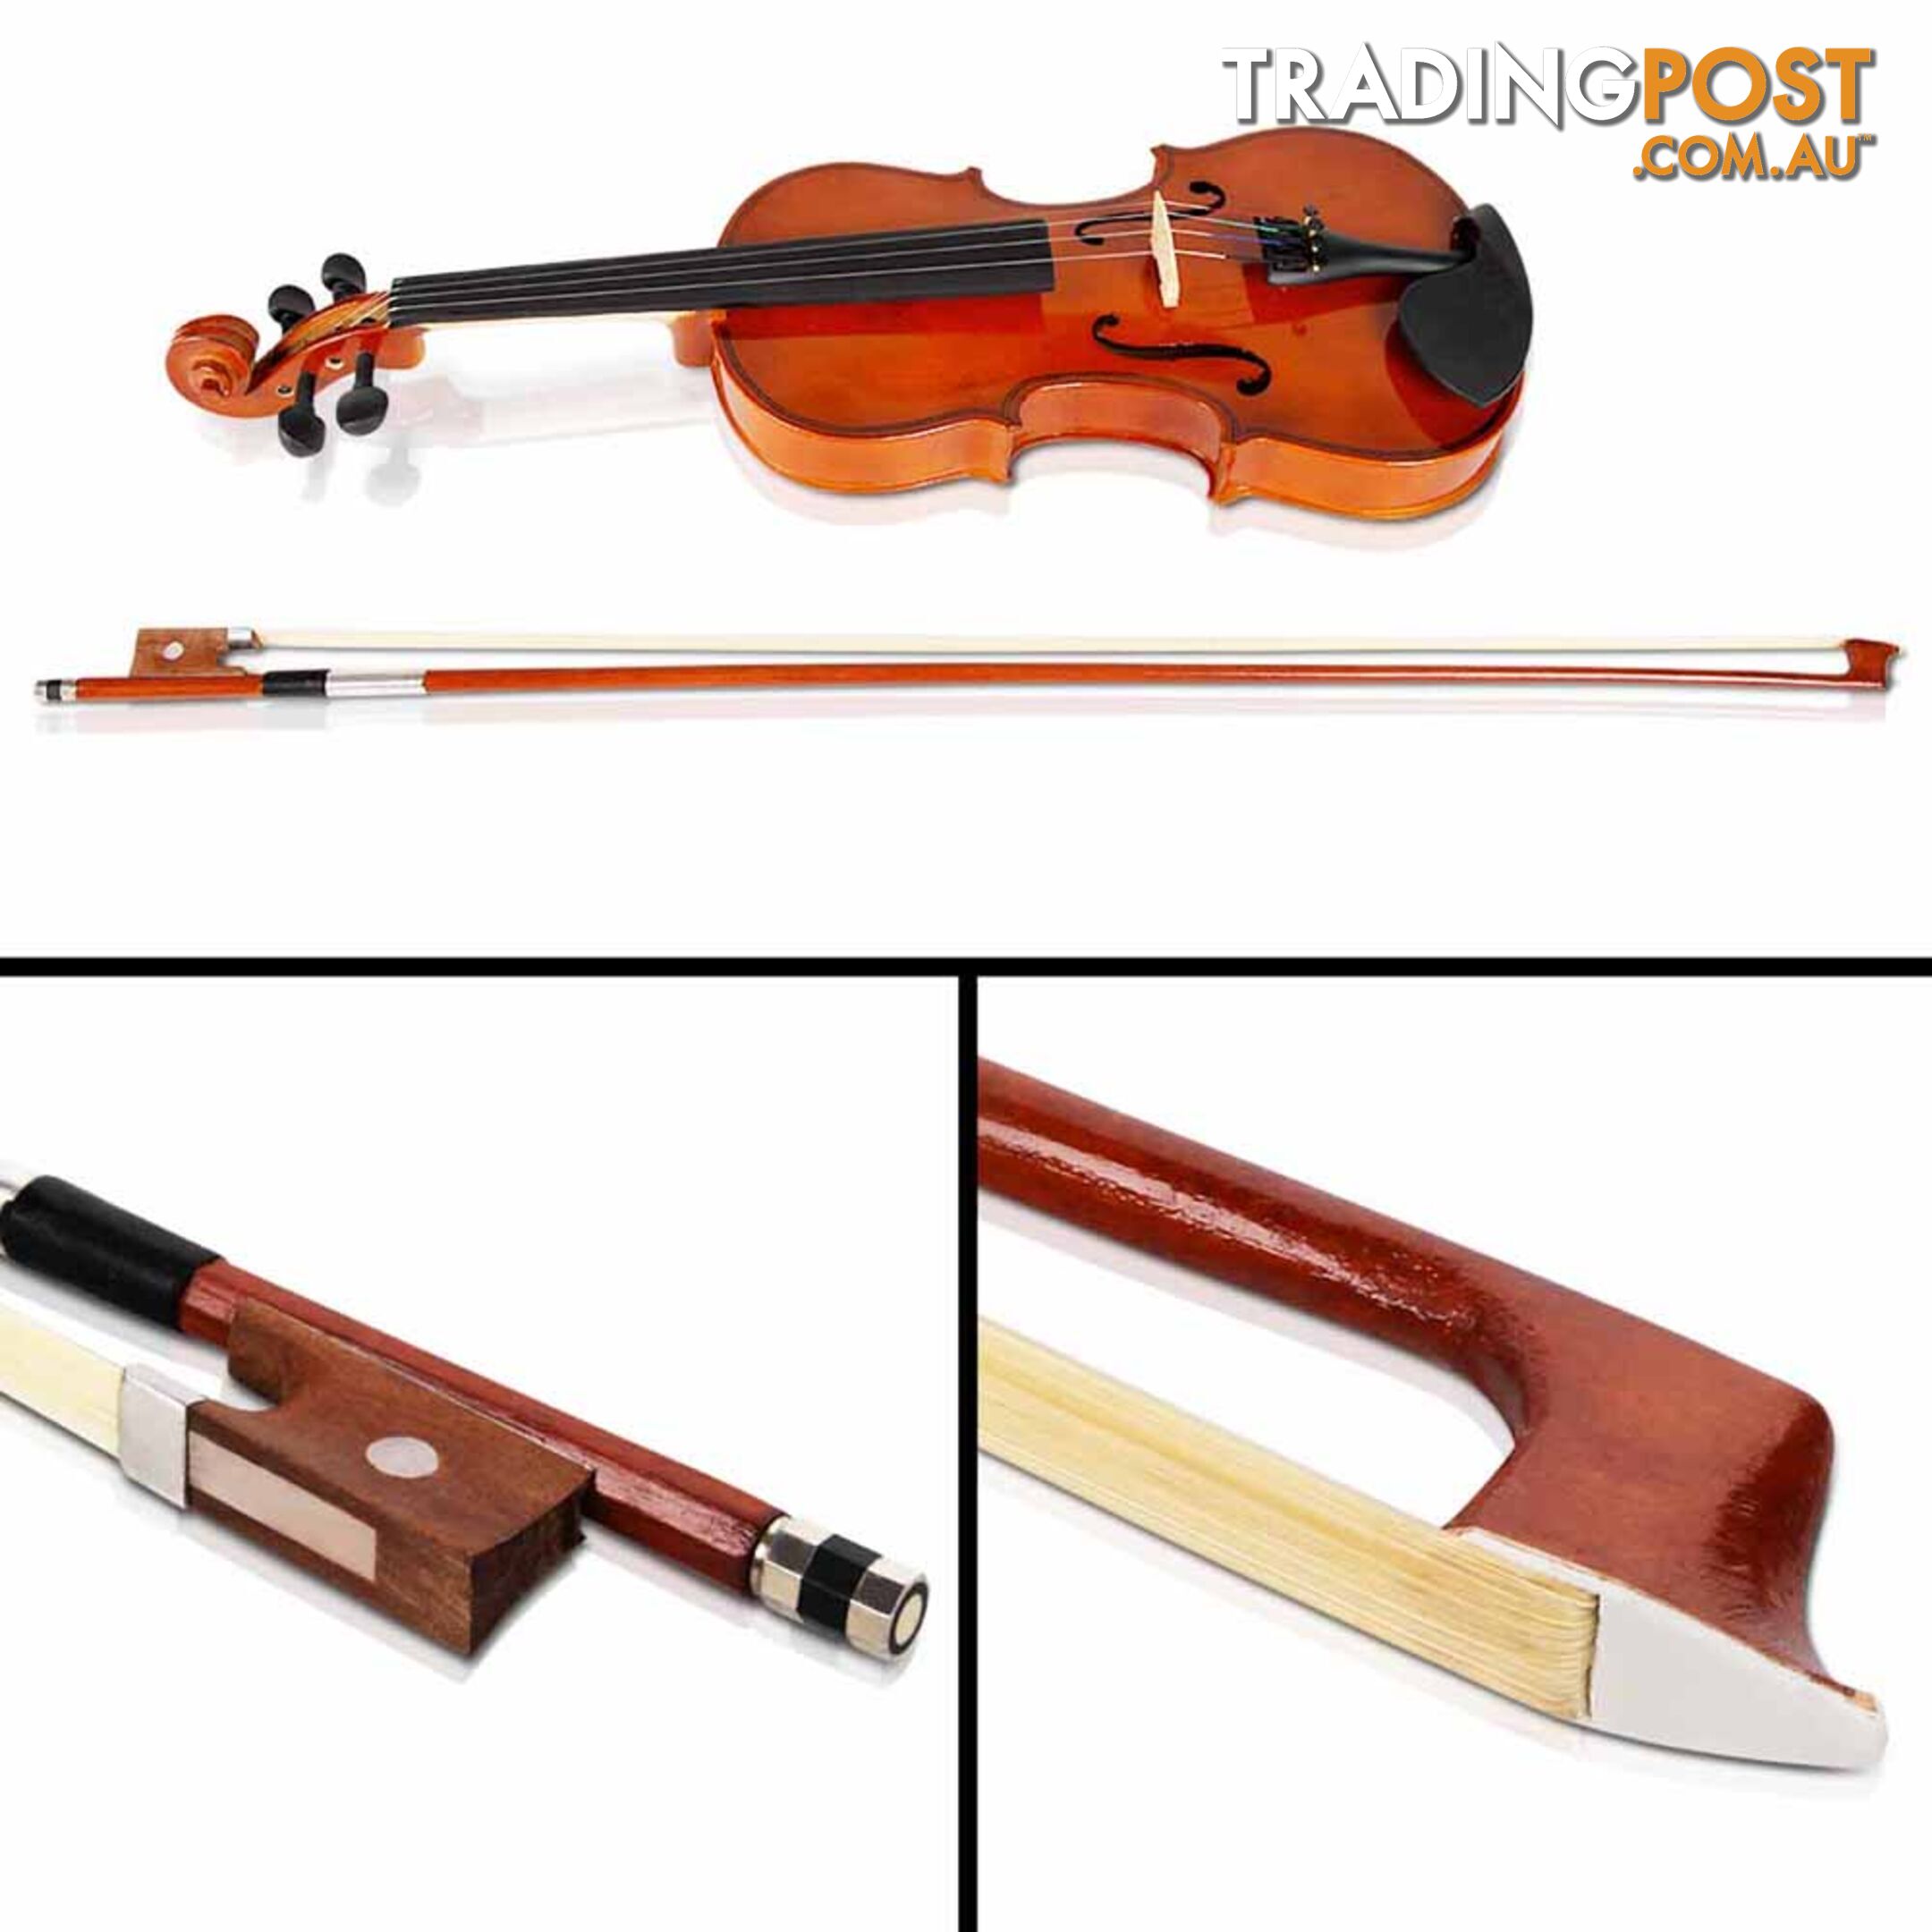 Full Size 4/4 Natural Wooden Beginner Violin Set Brown